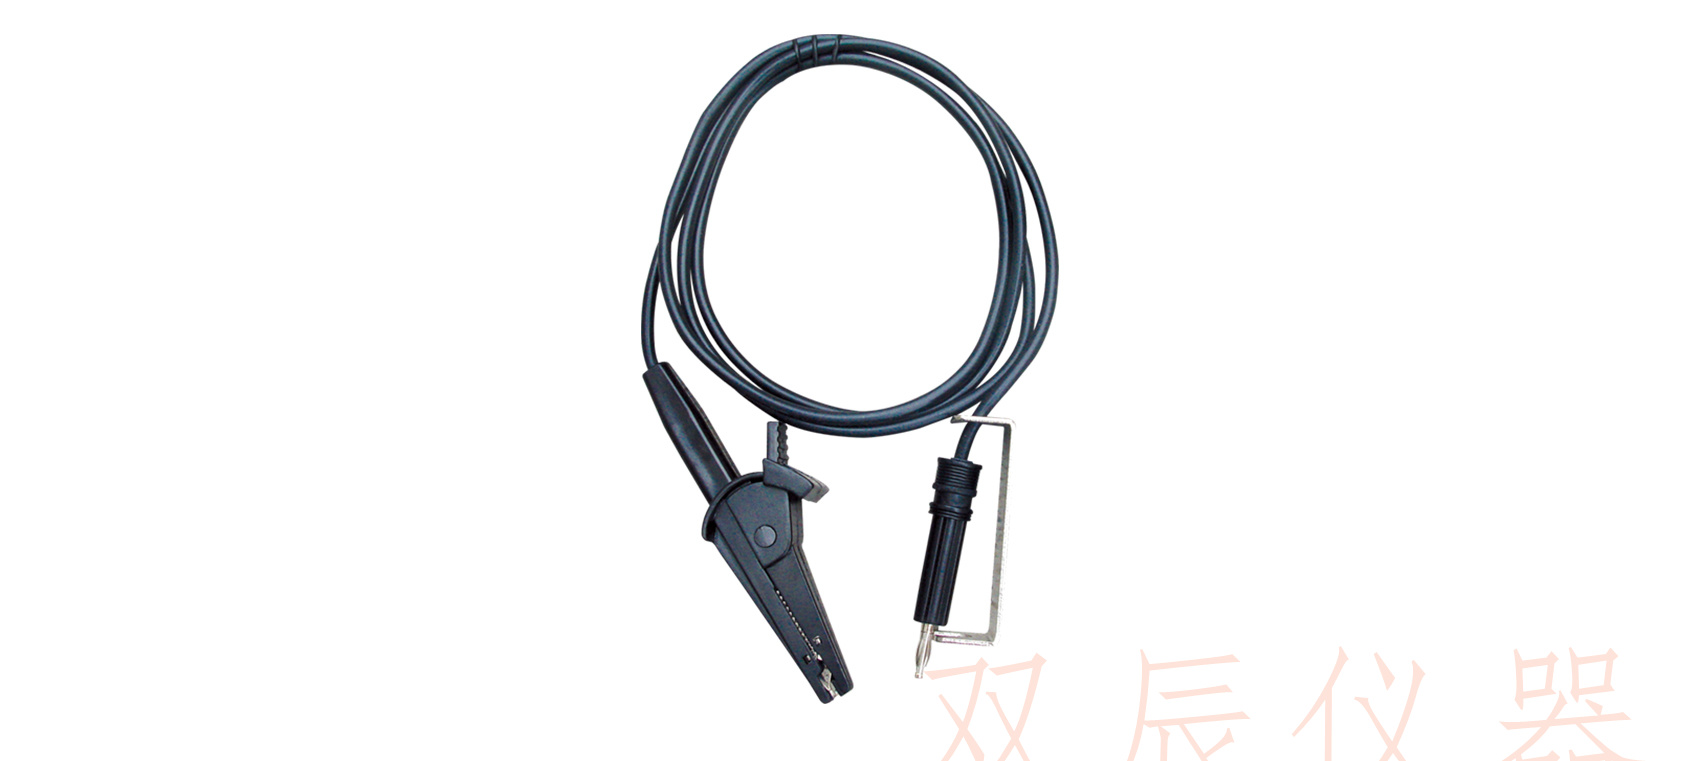 TH90003B 高压测试电缆